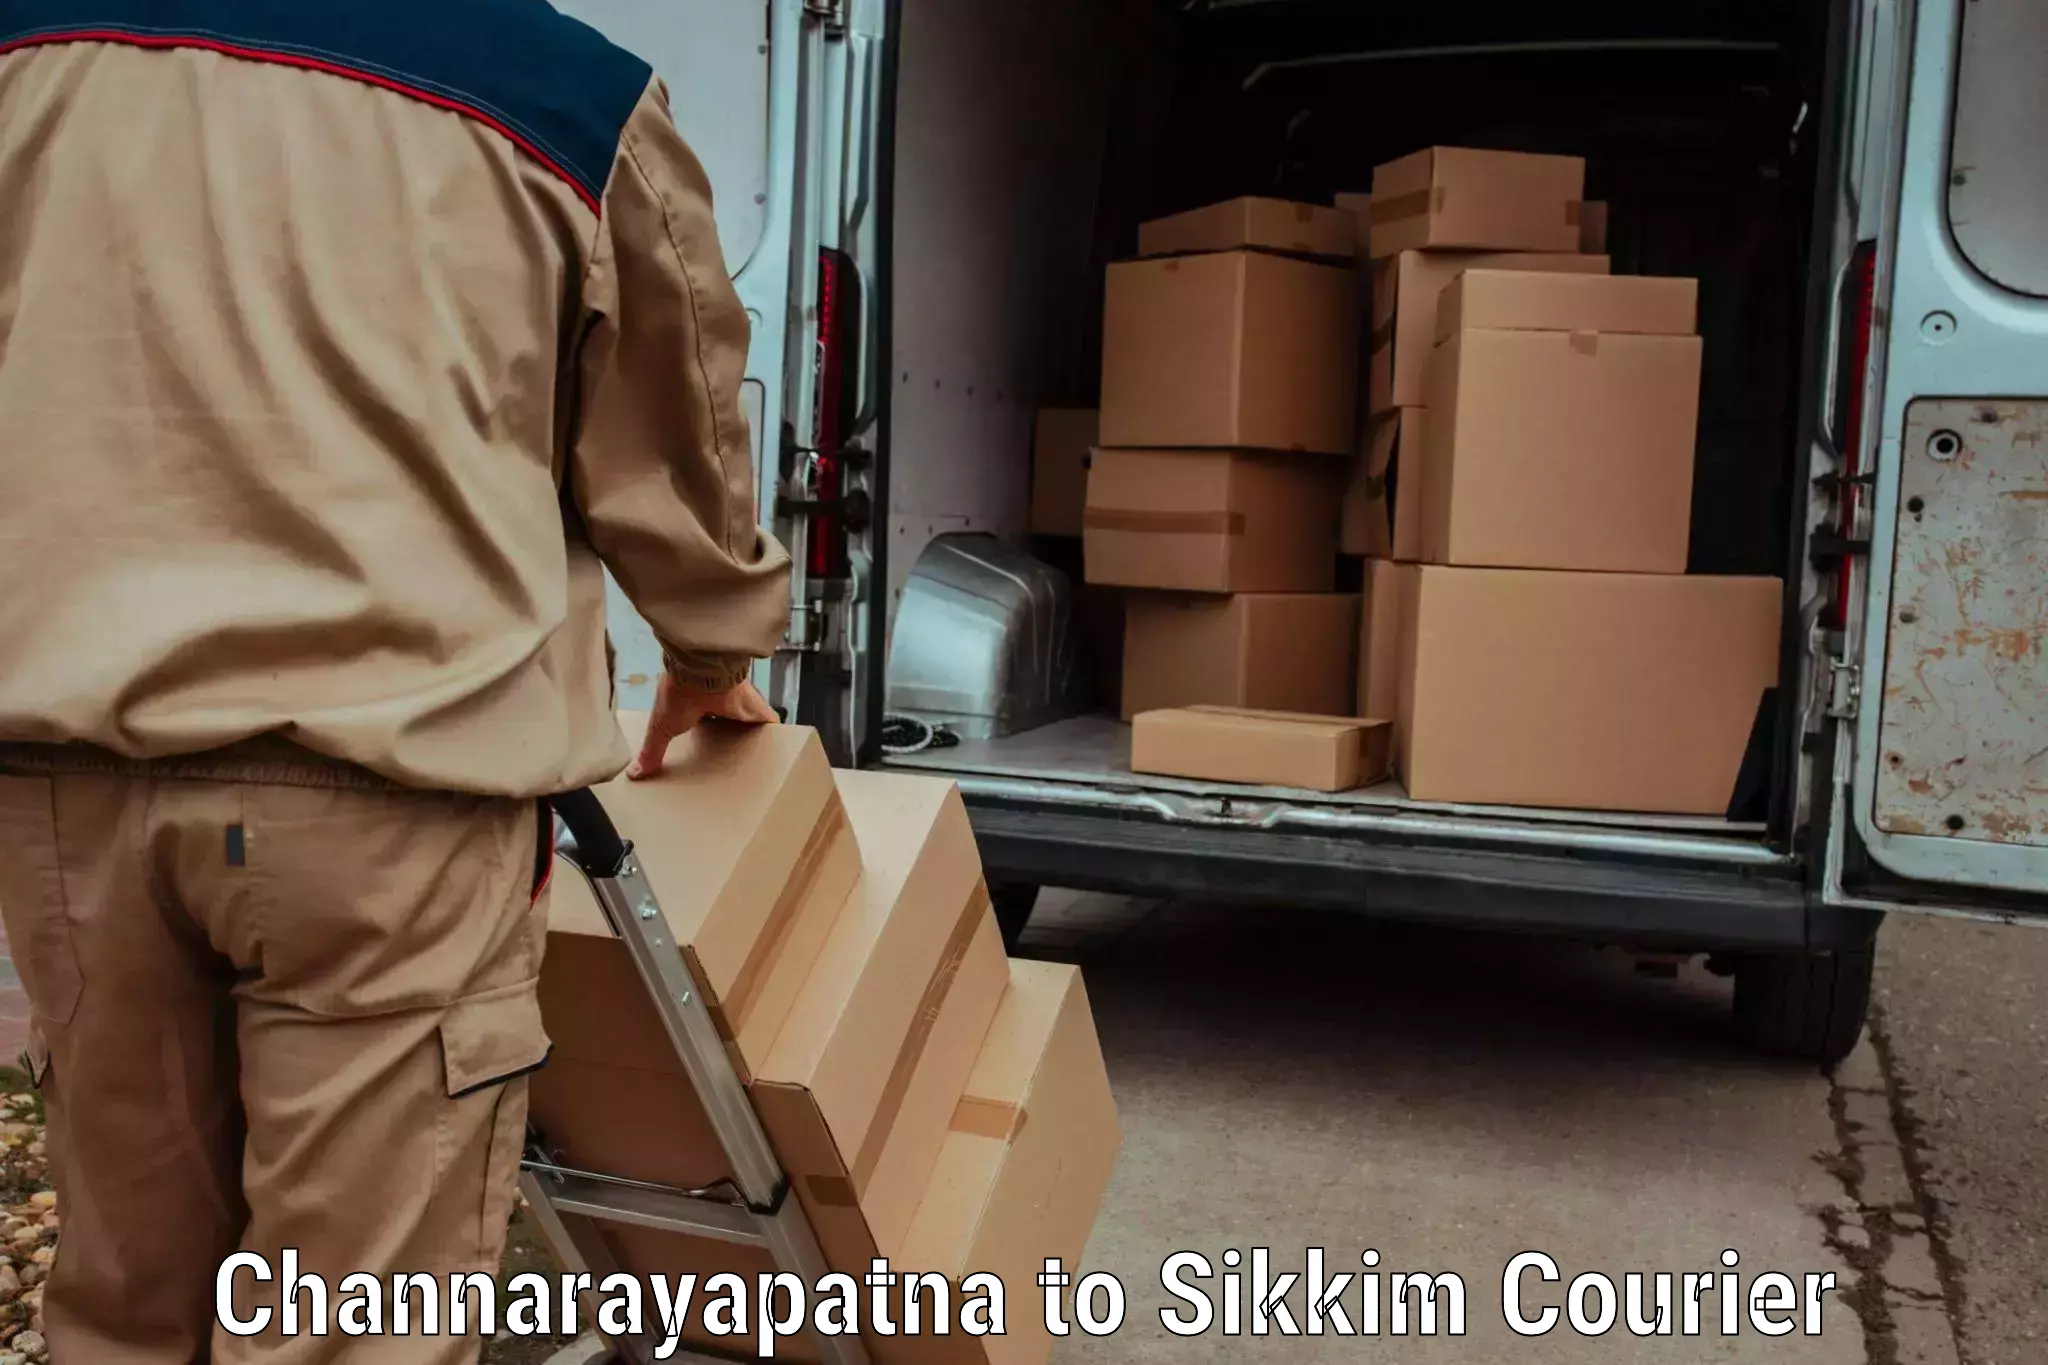 Reliable parcel services Channarayapatna to Mangan